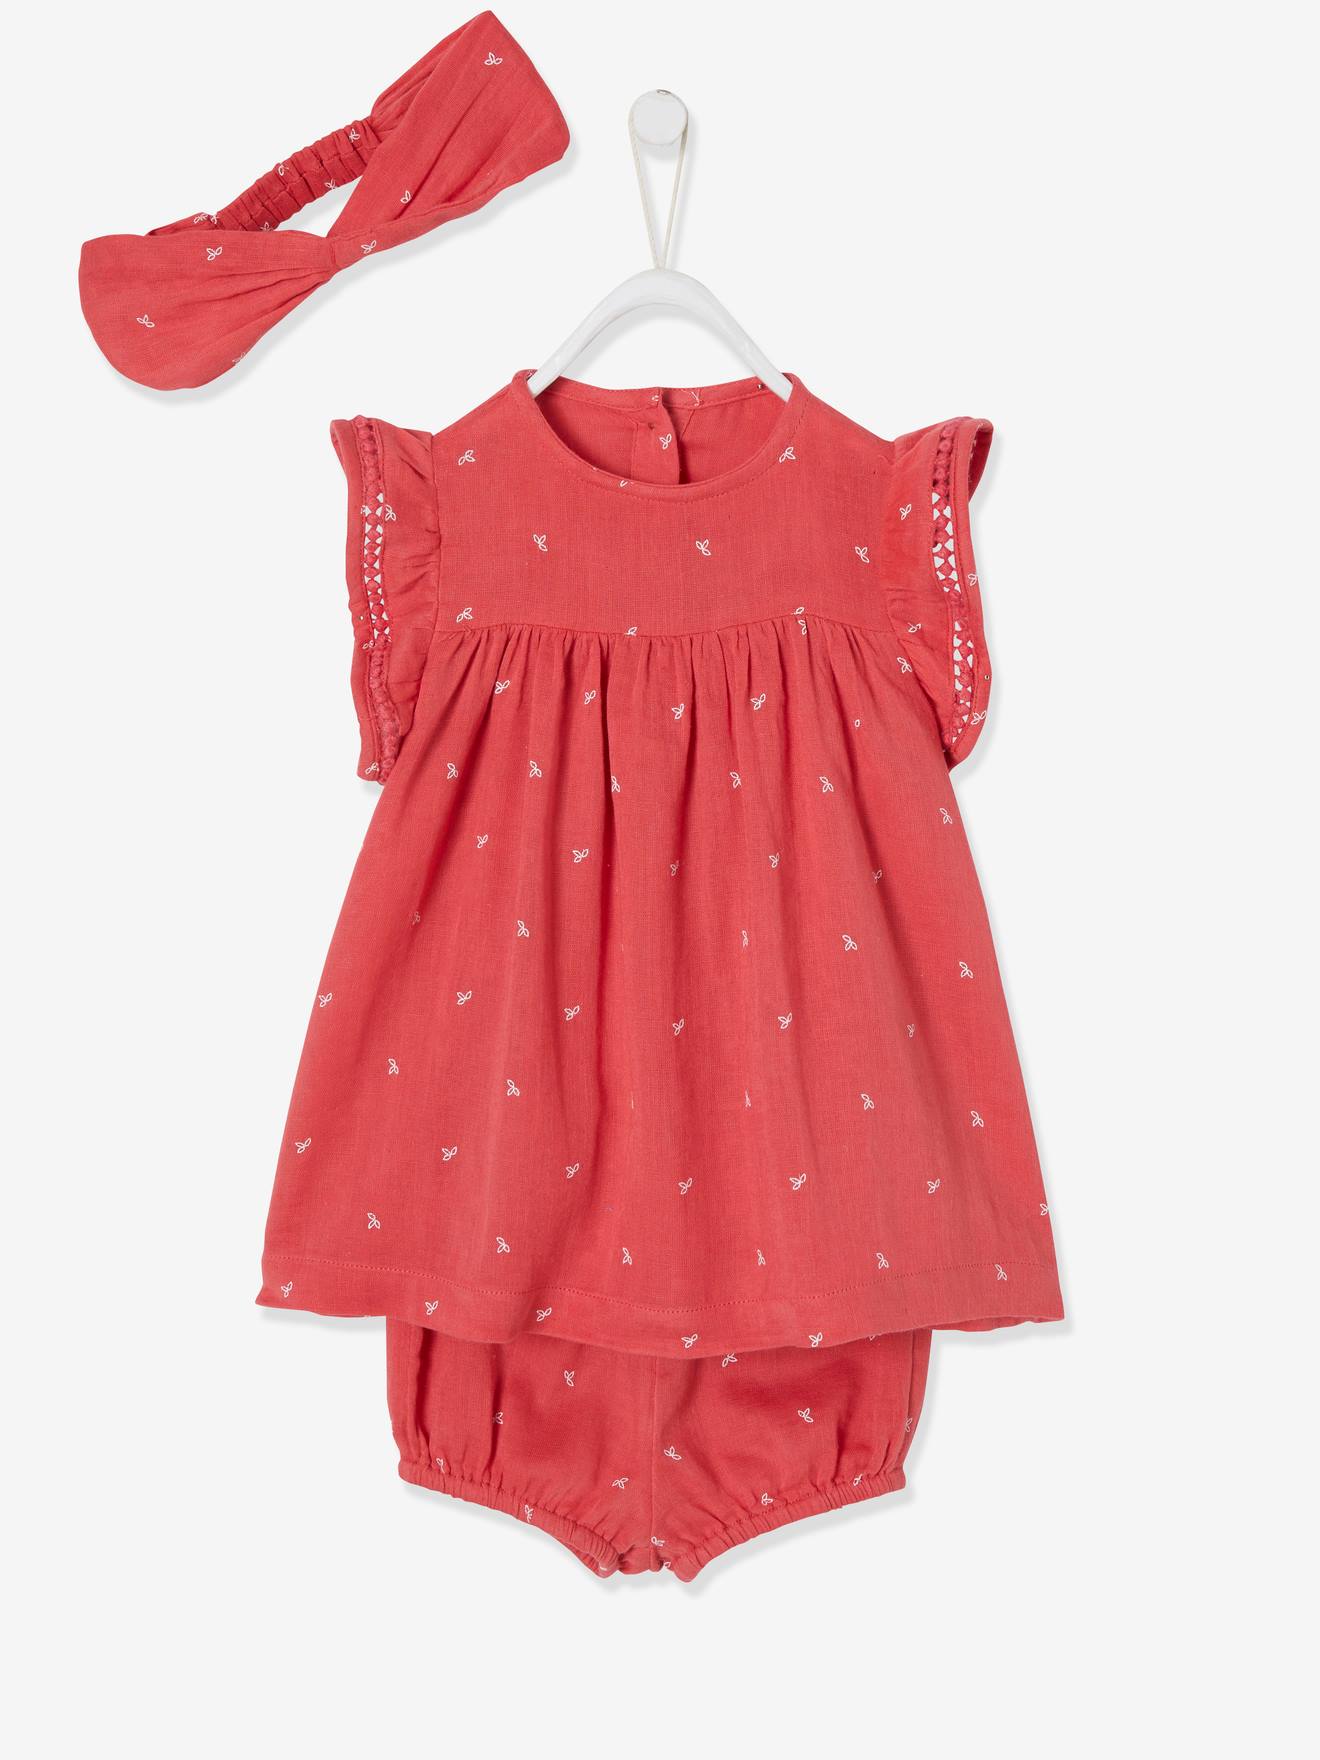 Bedrukt setje jurk, bloomer en hoofdband voor baby roze met print